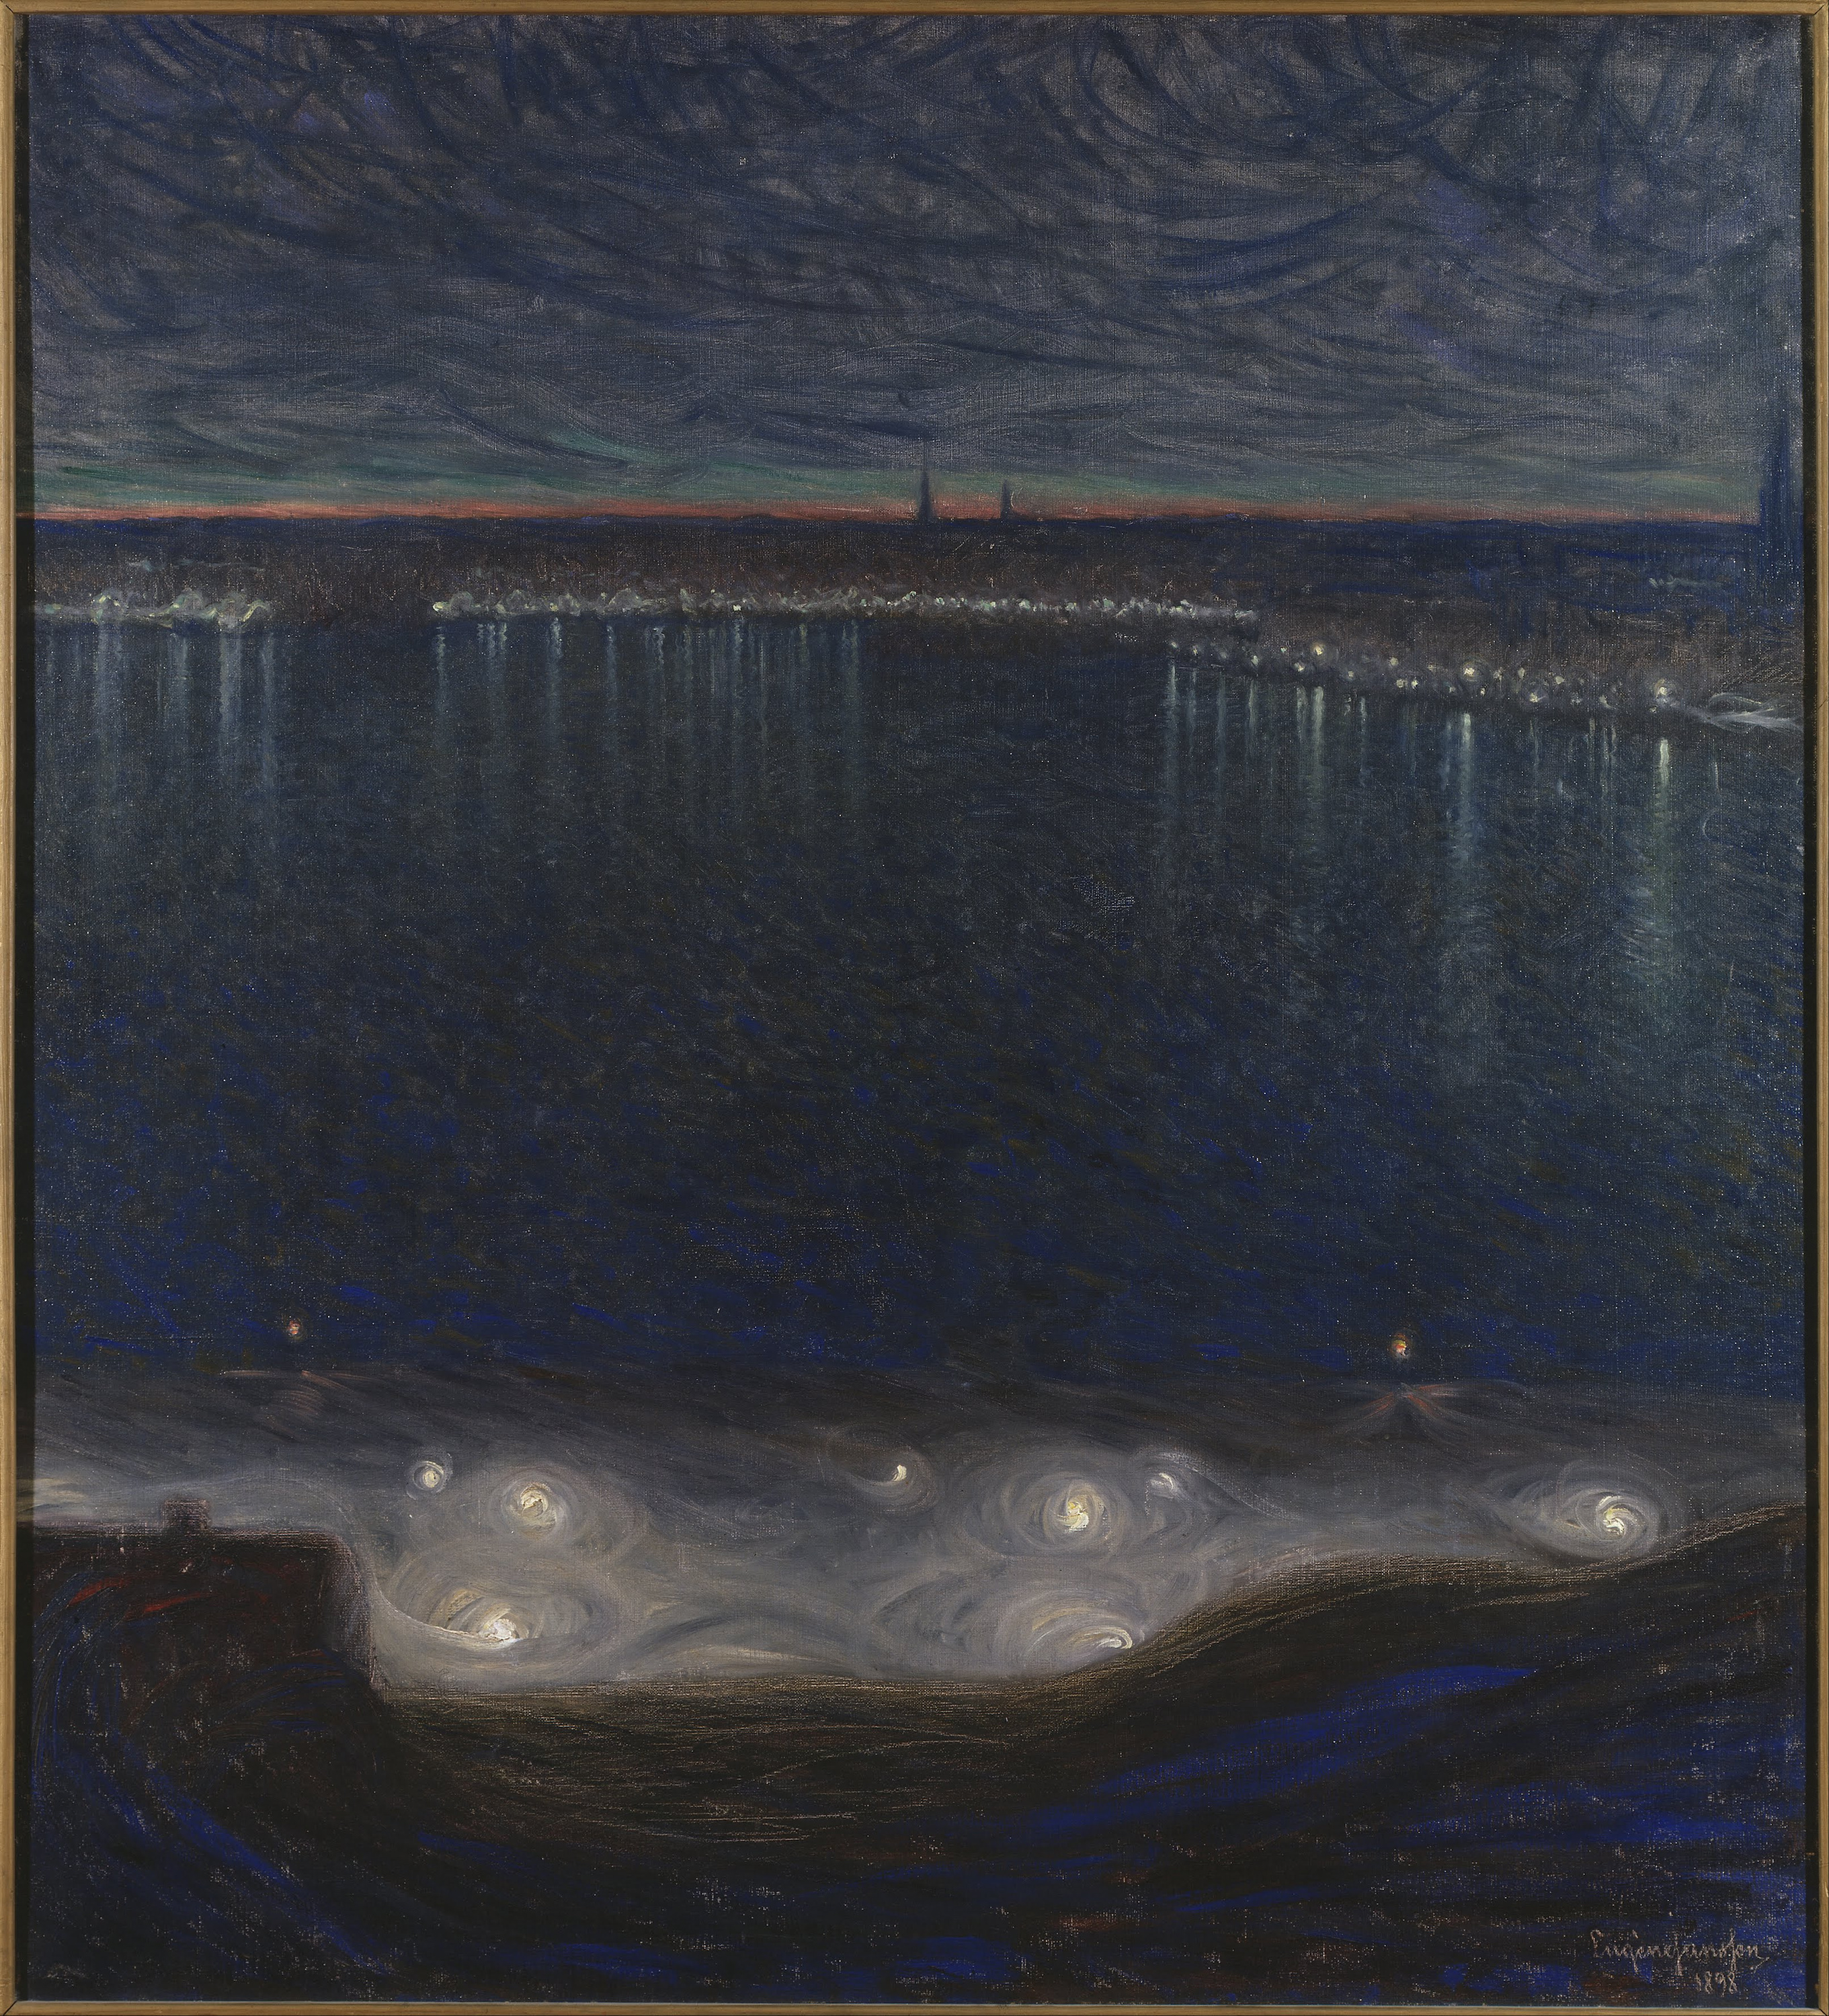 스톡홀름 풍경(Riddarfiarden in Stockholm) by Eugène Jansson - 1898 - 50 x 135 cm 